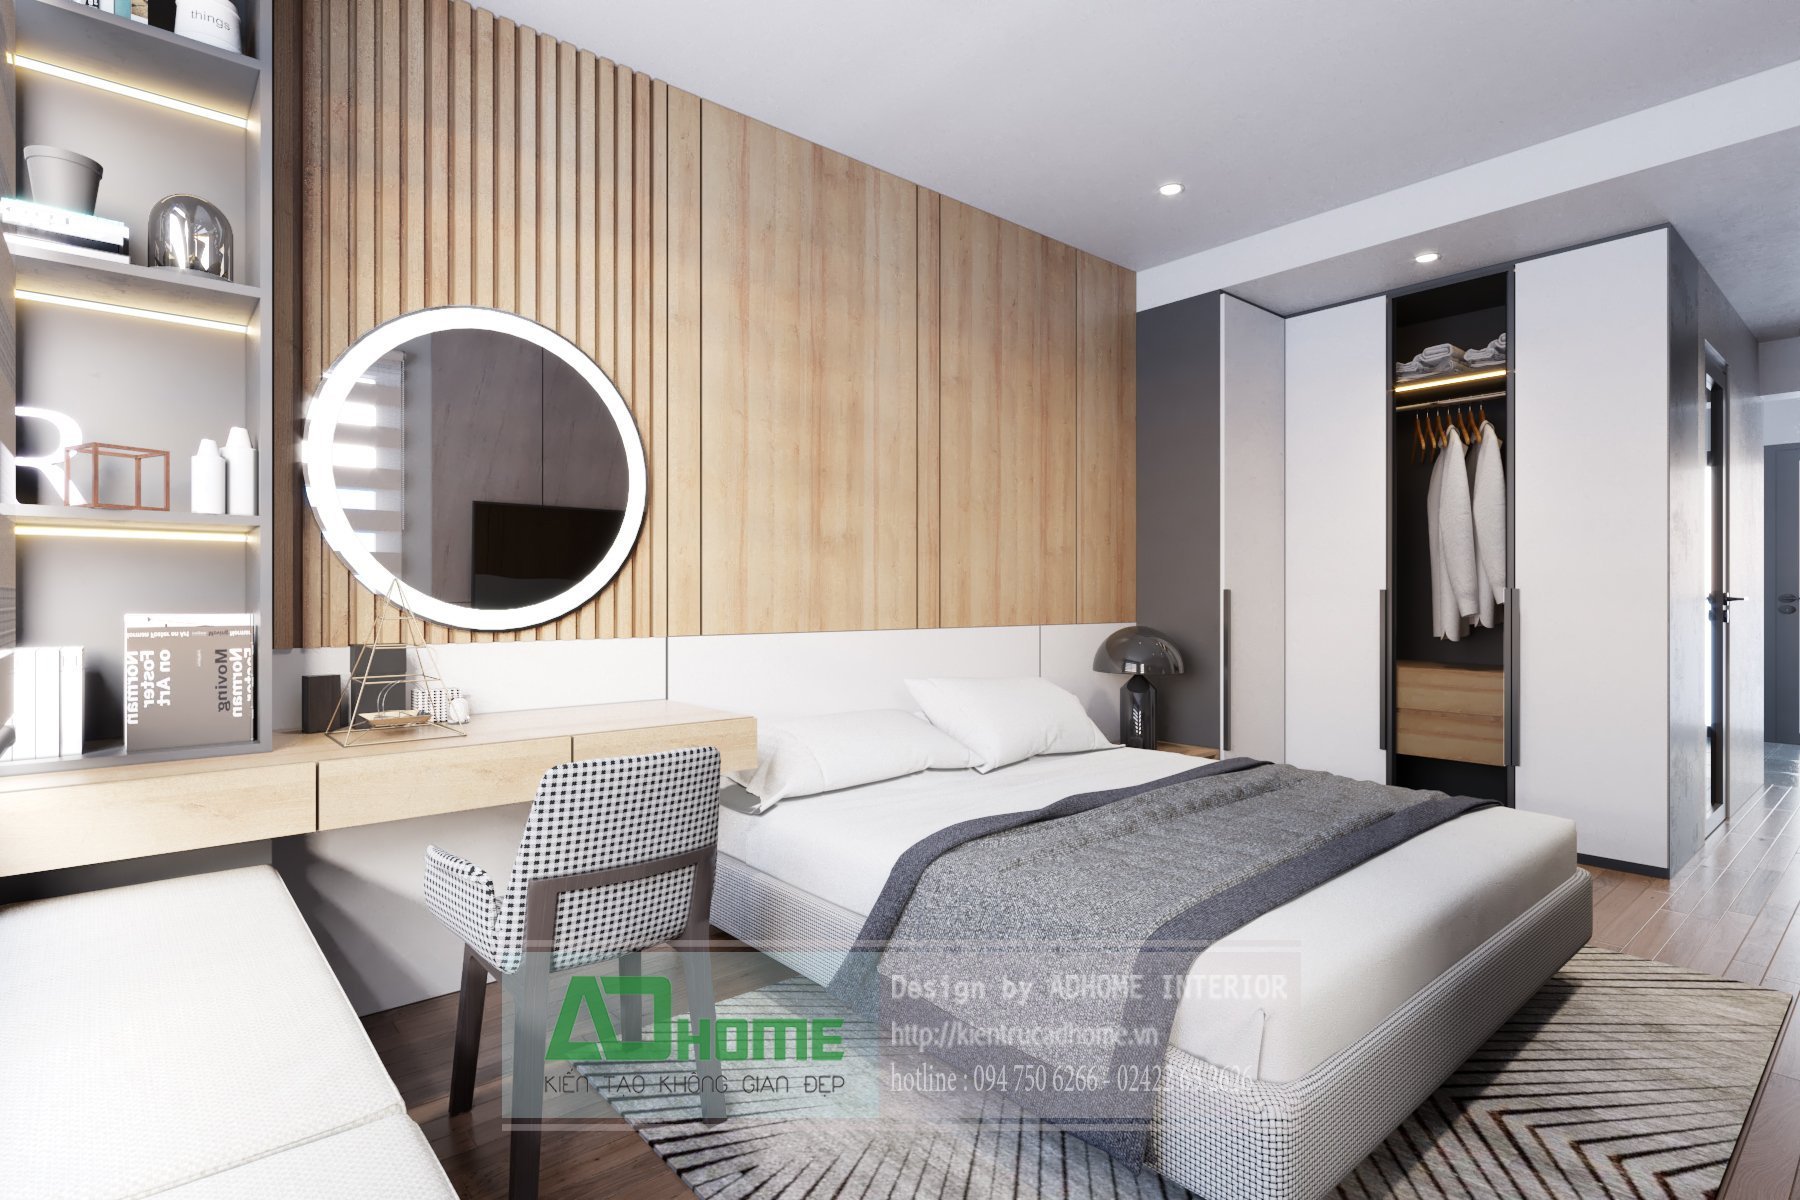  Thiết kế nội thất chung cư Nguyễn Văn Trỗi - Phong cách Hiện đại